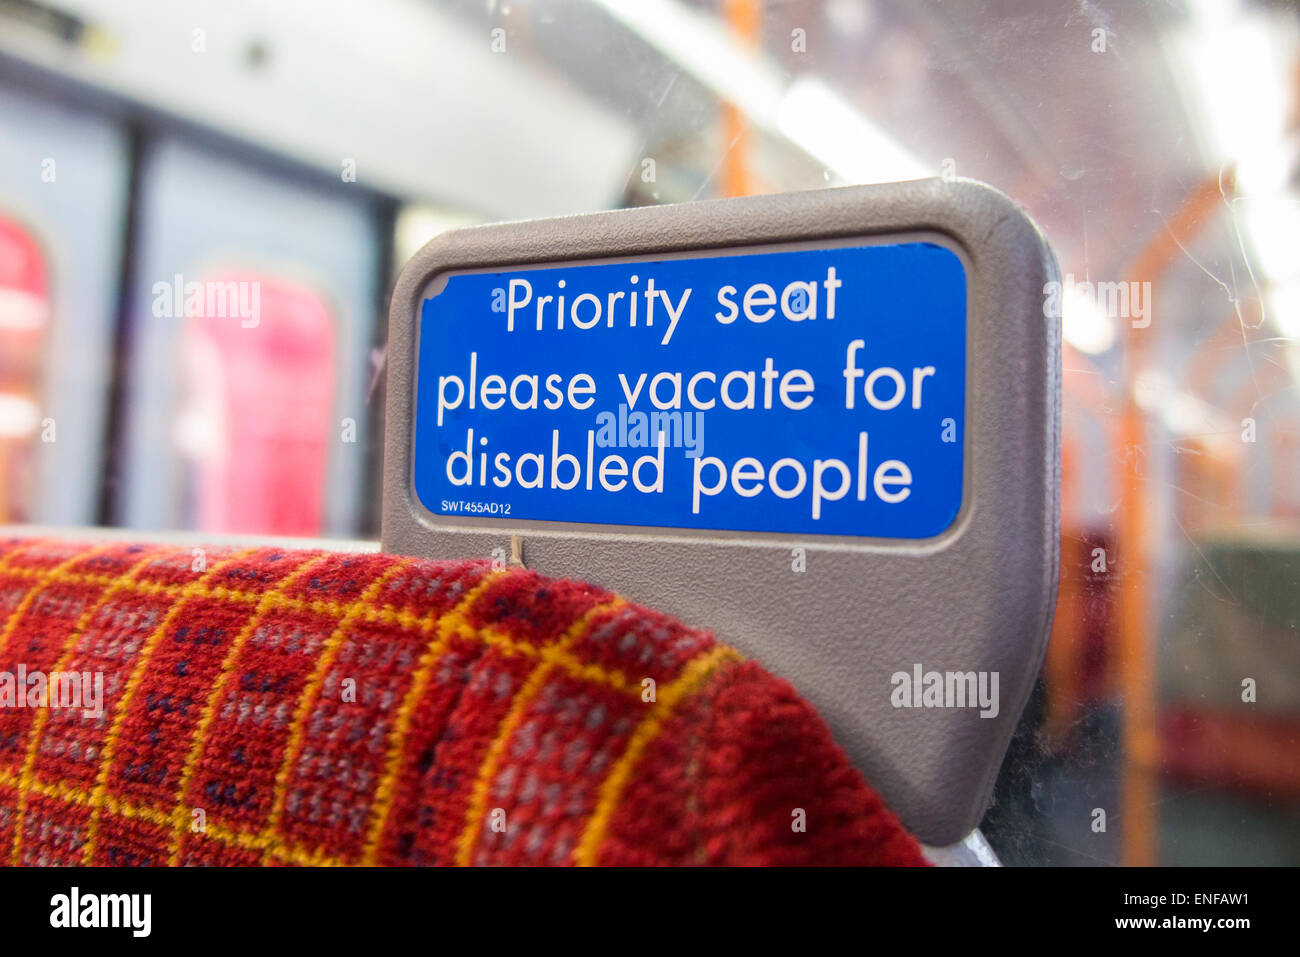 Firmare a sud ovest di treni Trasporto ferroviario sedile: "sedile di priorità si prega di liberare per persone disabili" Foto Stock